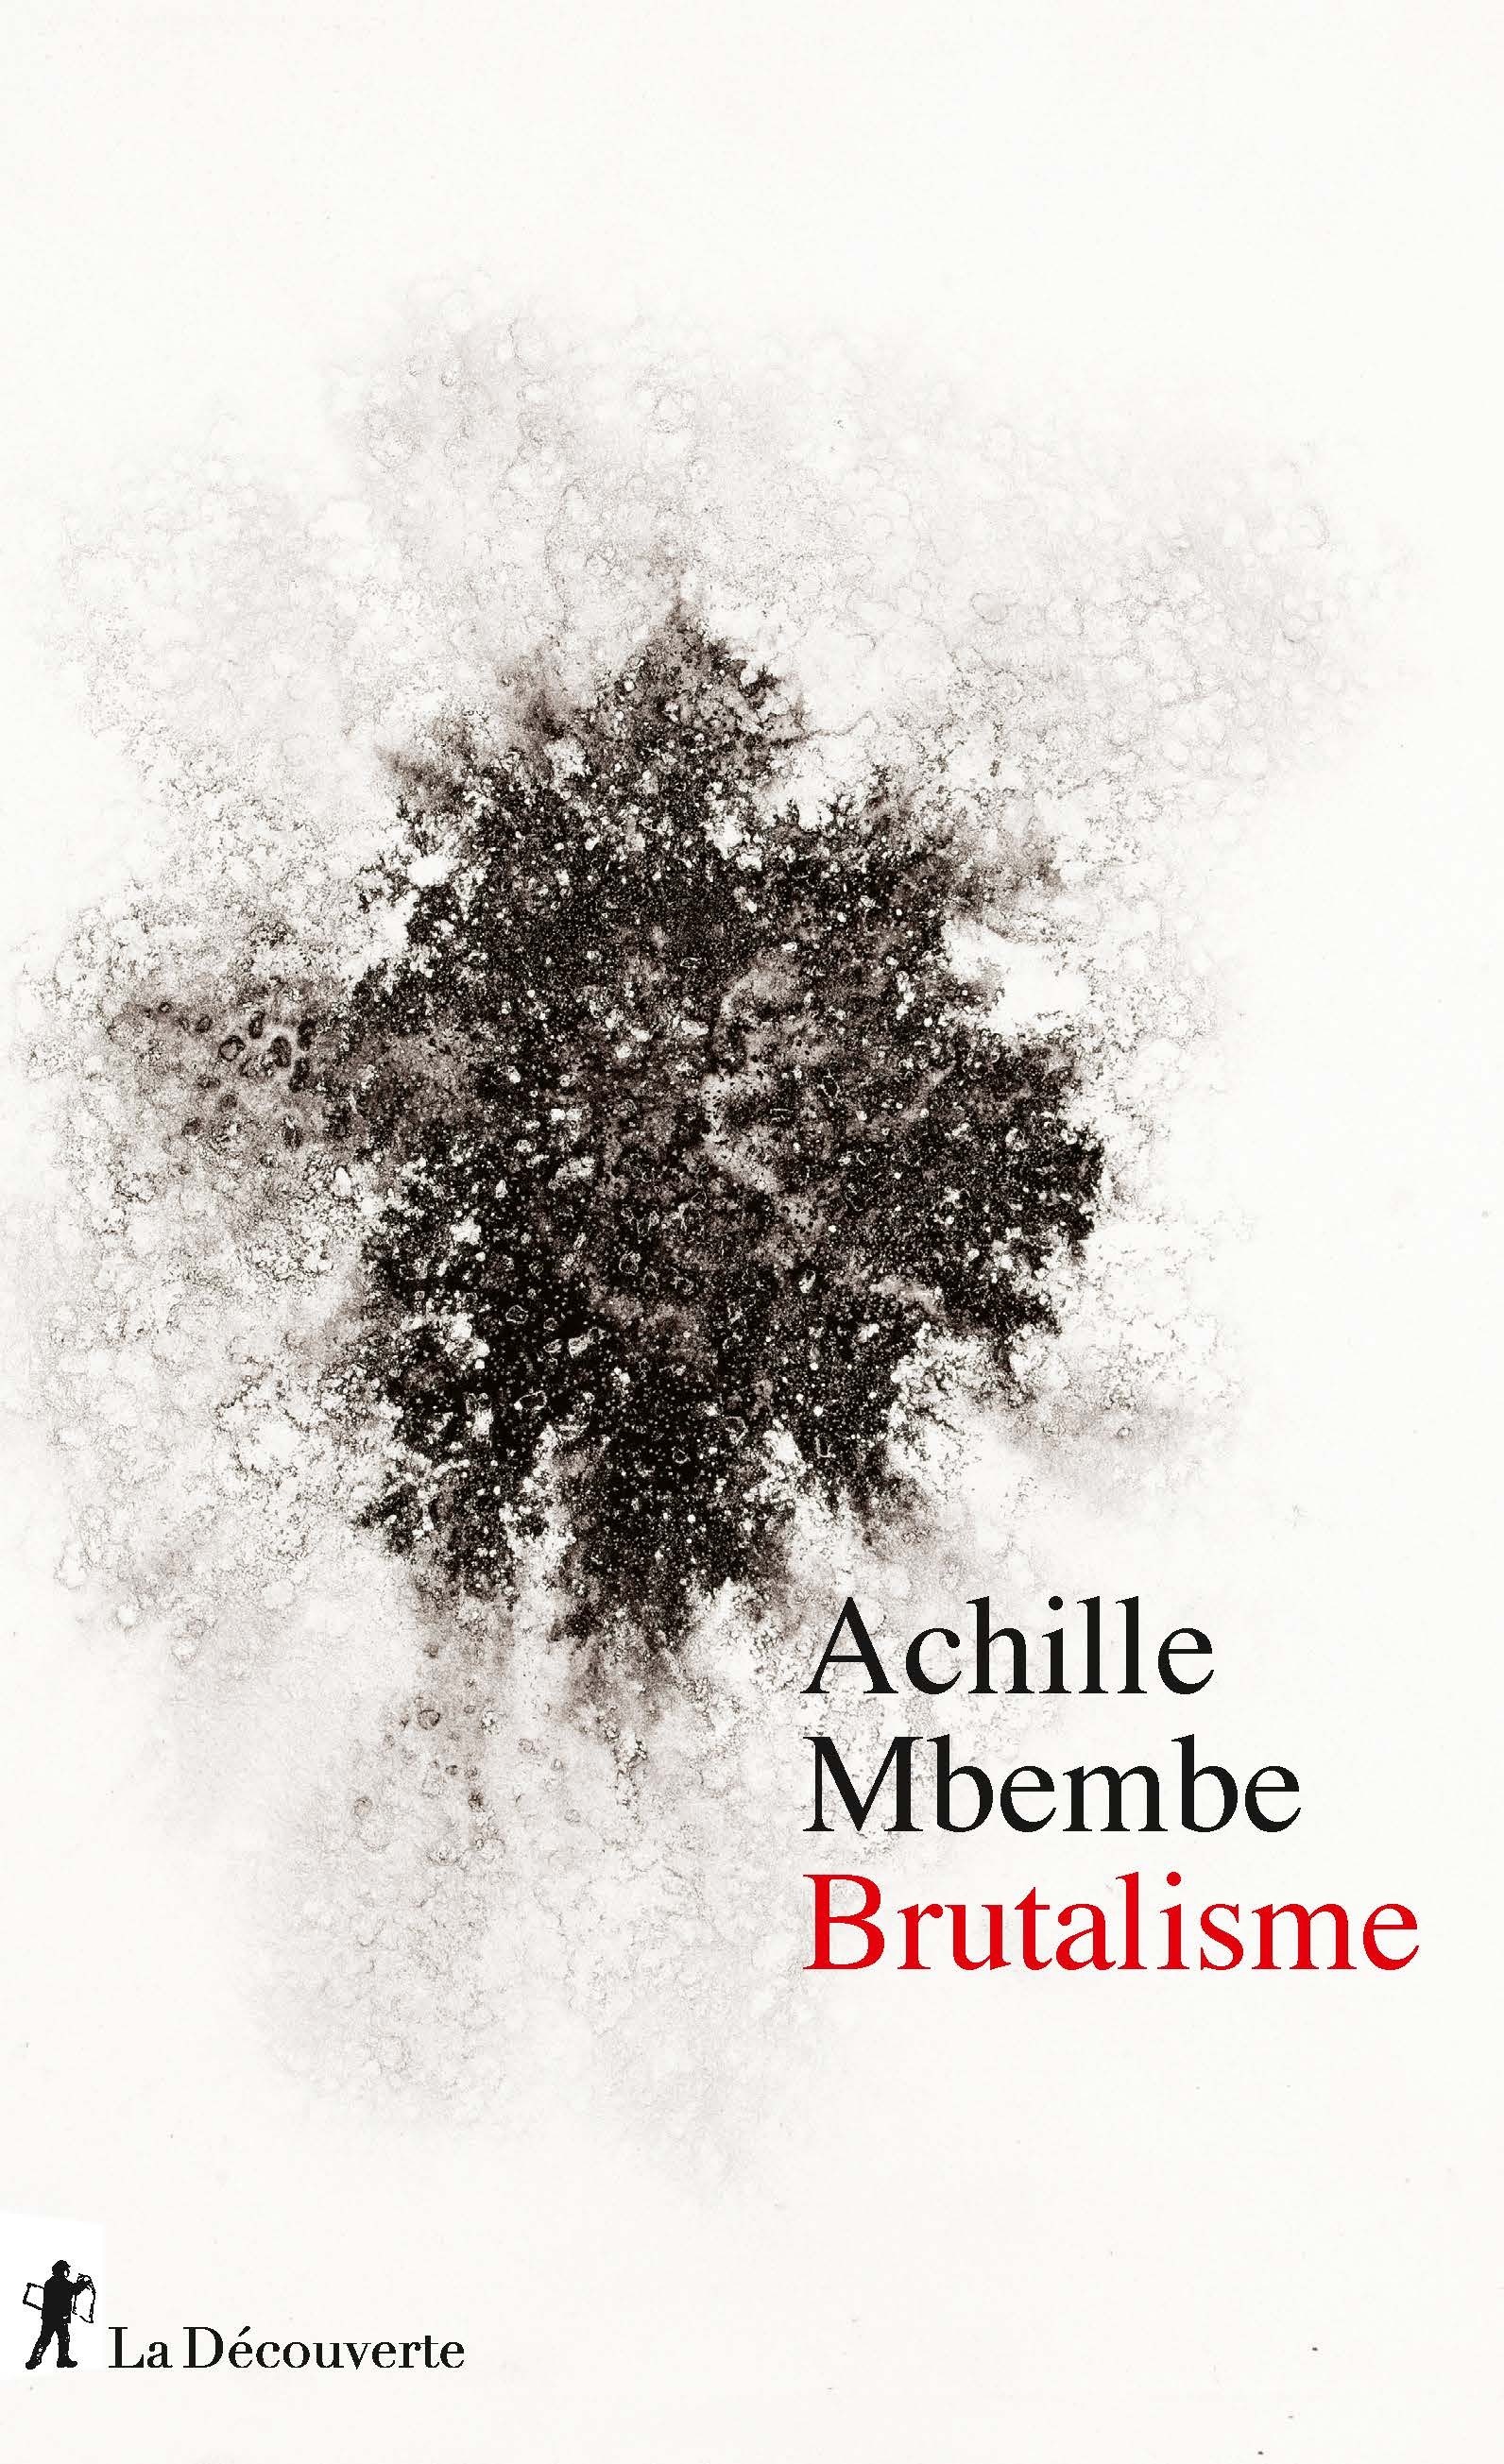 Couverture du livre d’Achille Mbembe